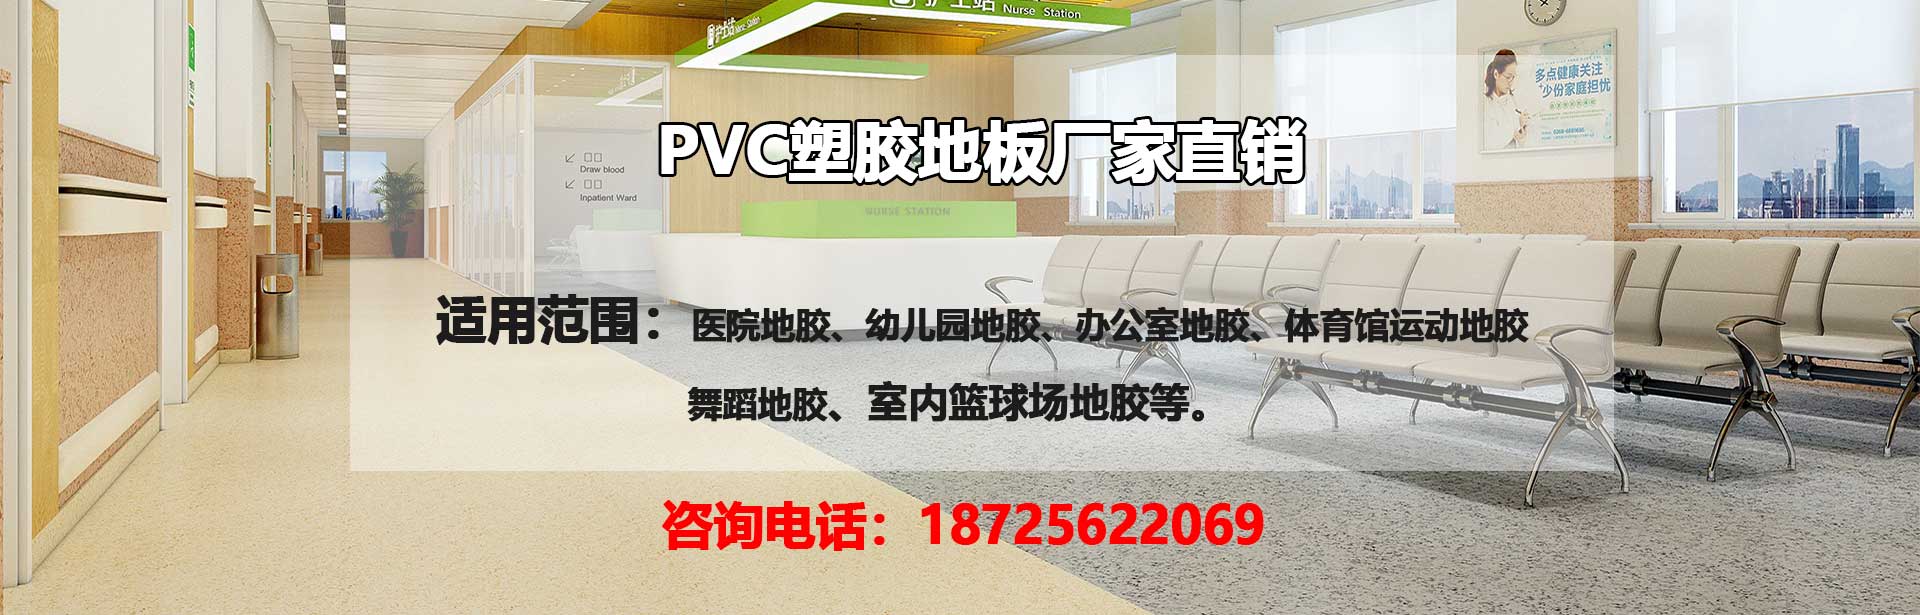 大竹PVC塑胶地板